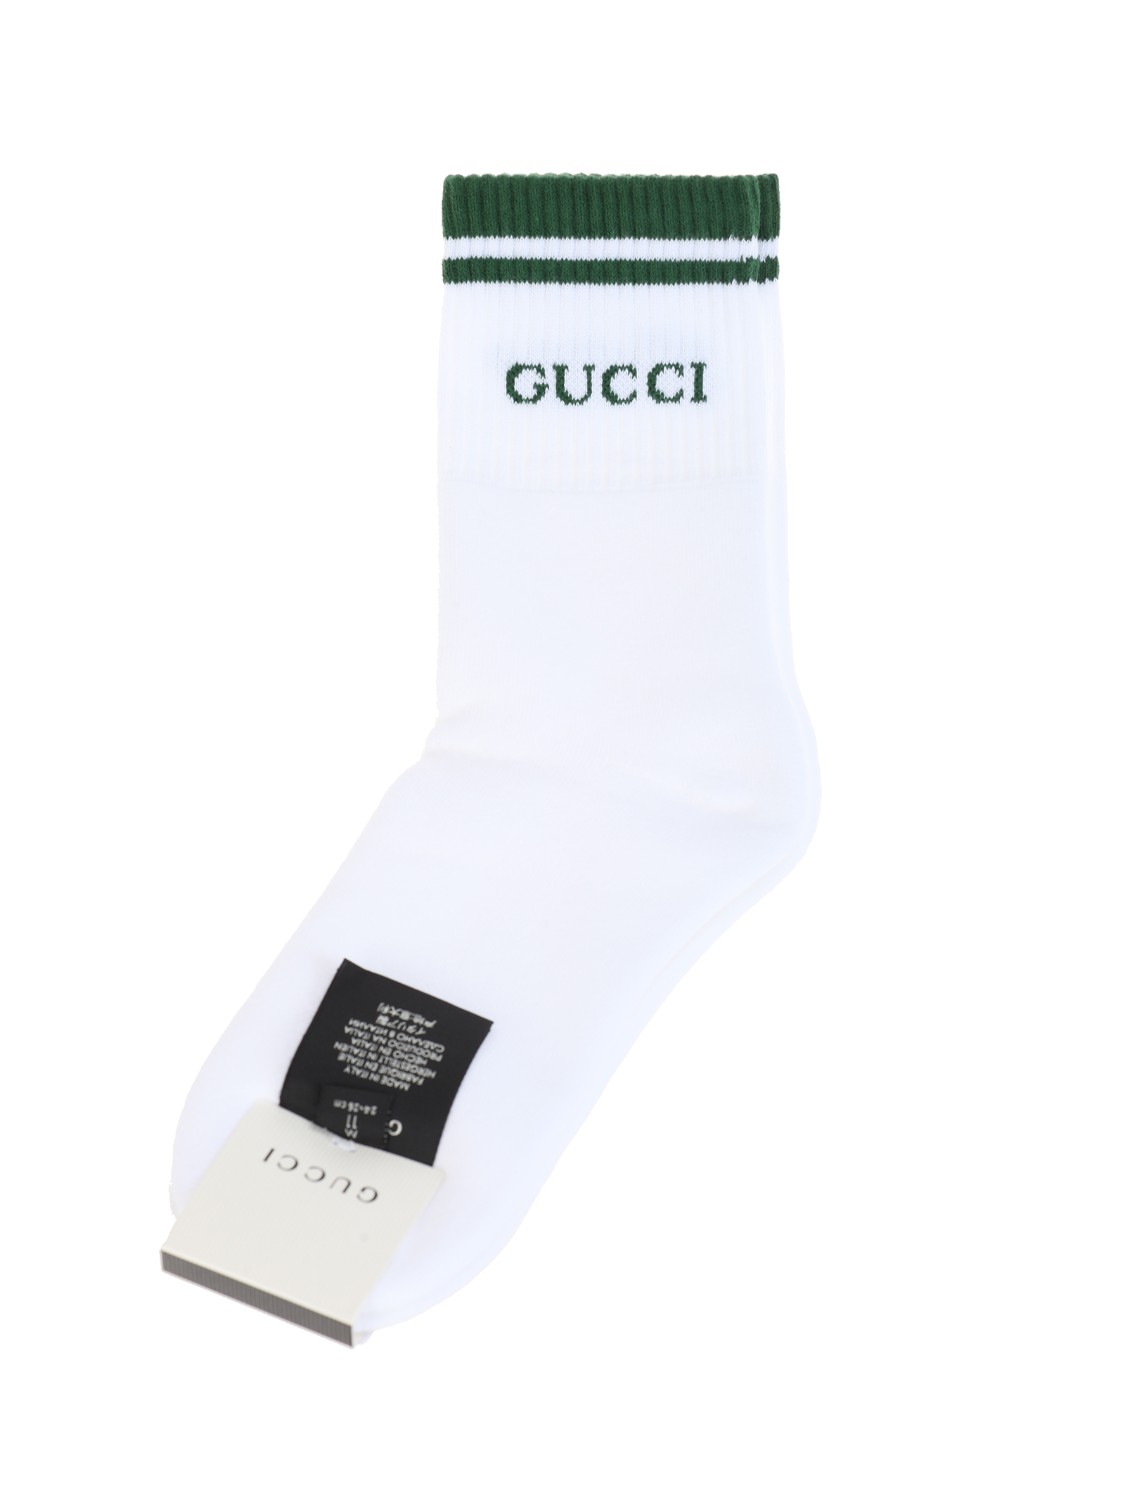 shop GUCCI Saldi calzini: Gucci calzini in cotone con Logo.
Riga a contrasto e logo Gucci.
Composizione: 80% cotone 13% poliammide 7% elastan.
Made in Italy.. 496493 4G293-9066 number 5614458